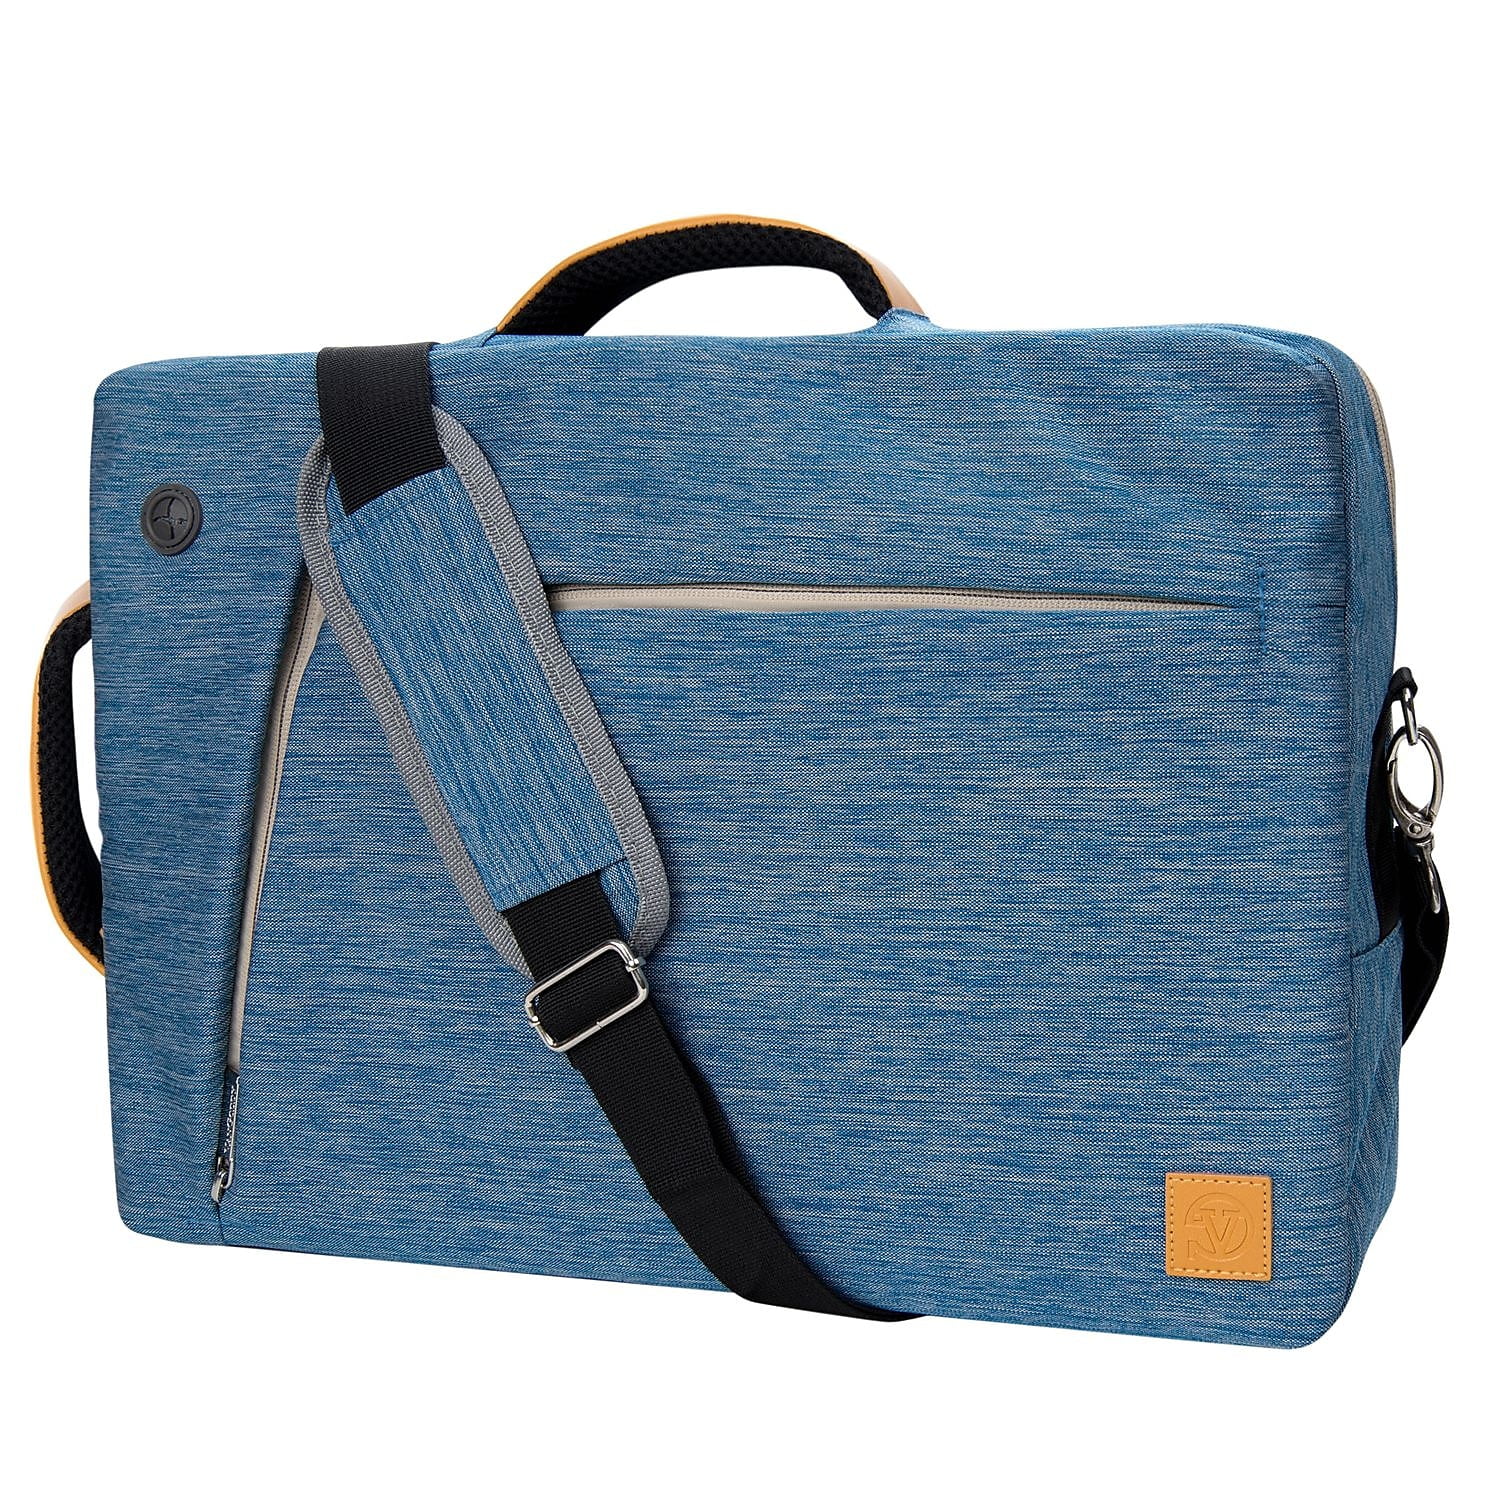 Polyster/ Nylon Acer Laptop Bag